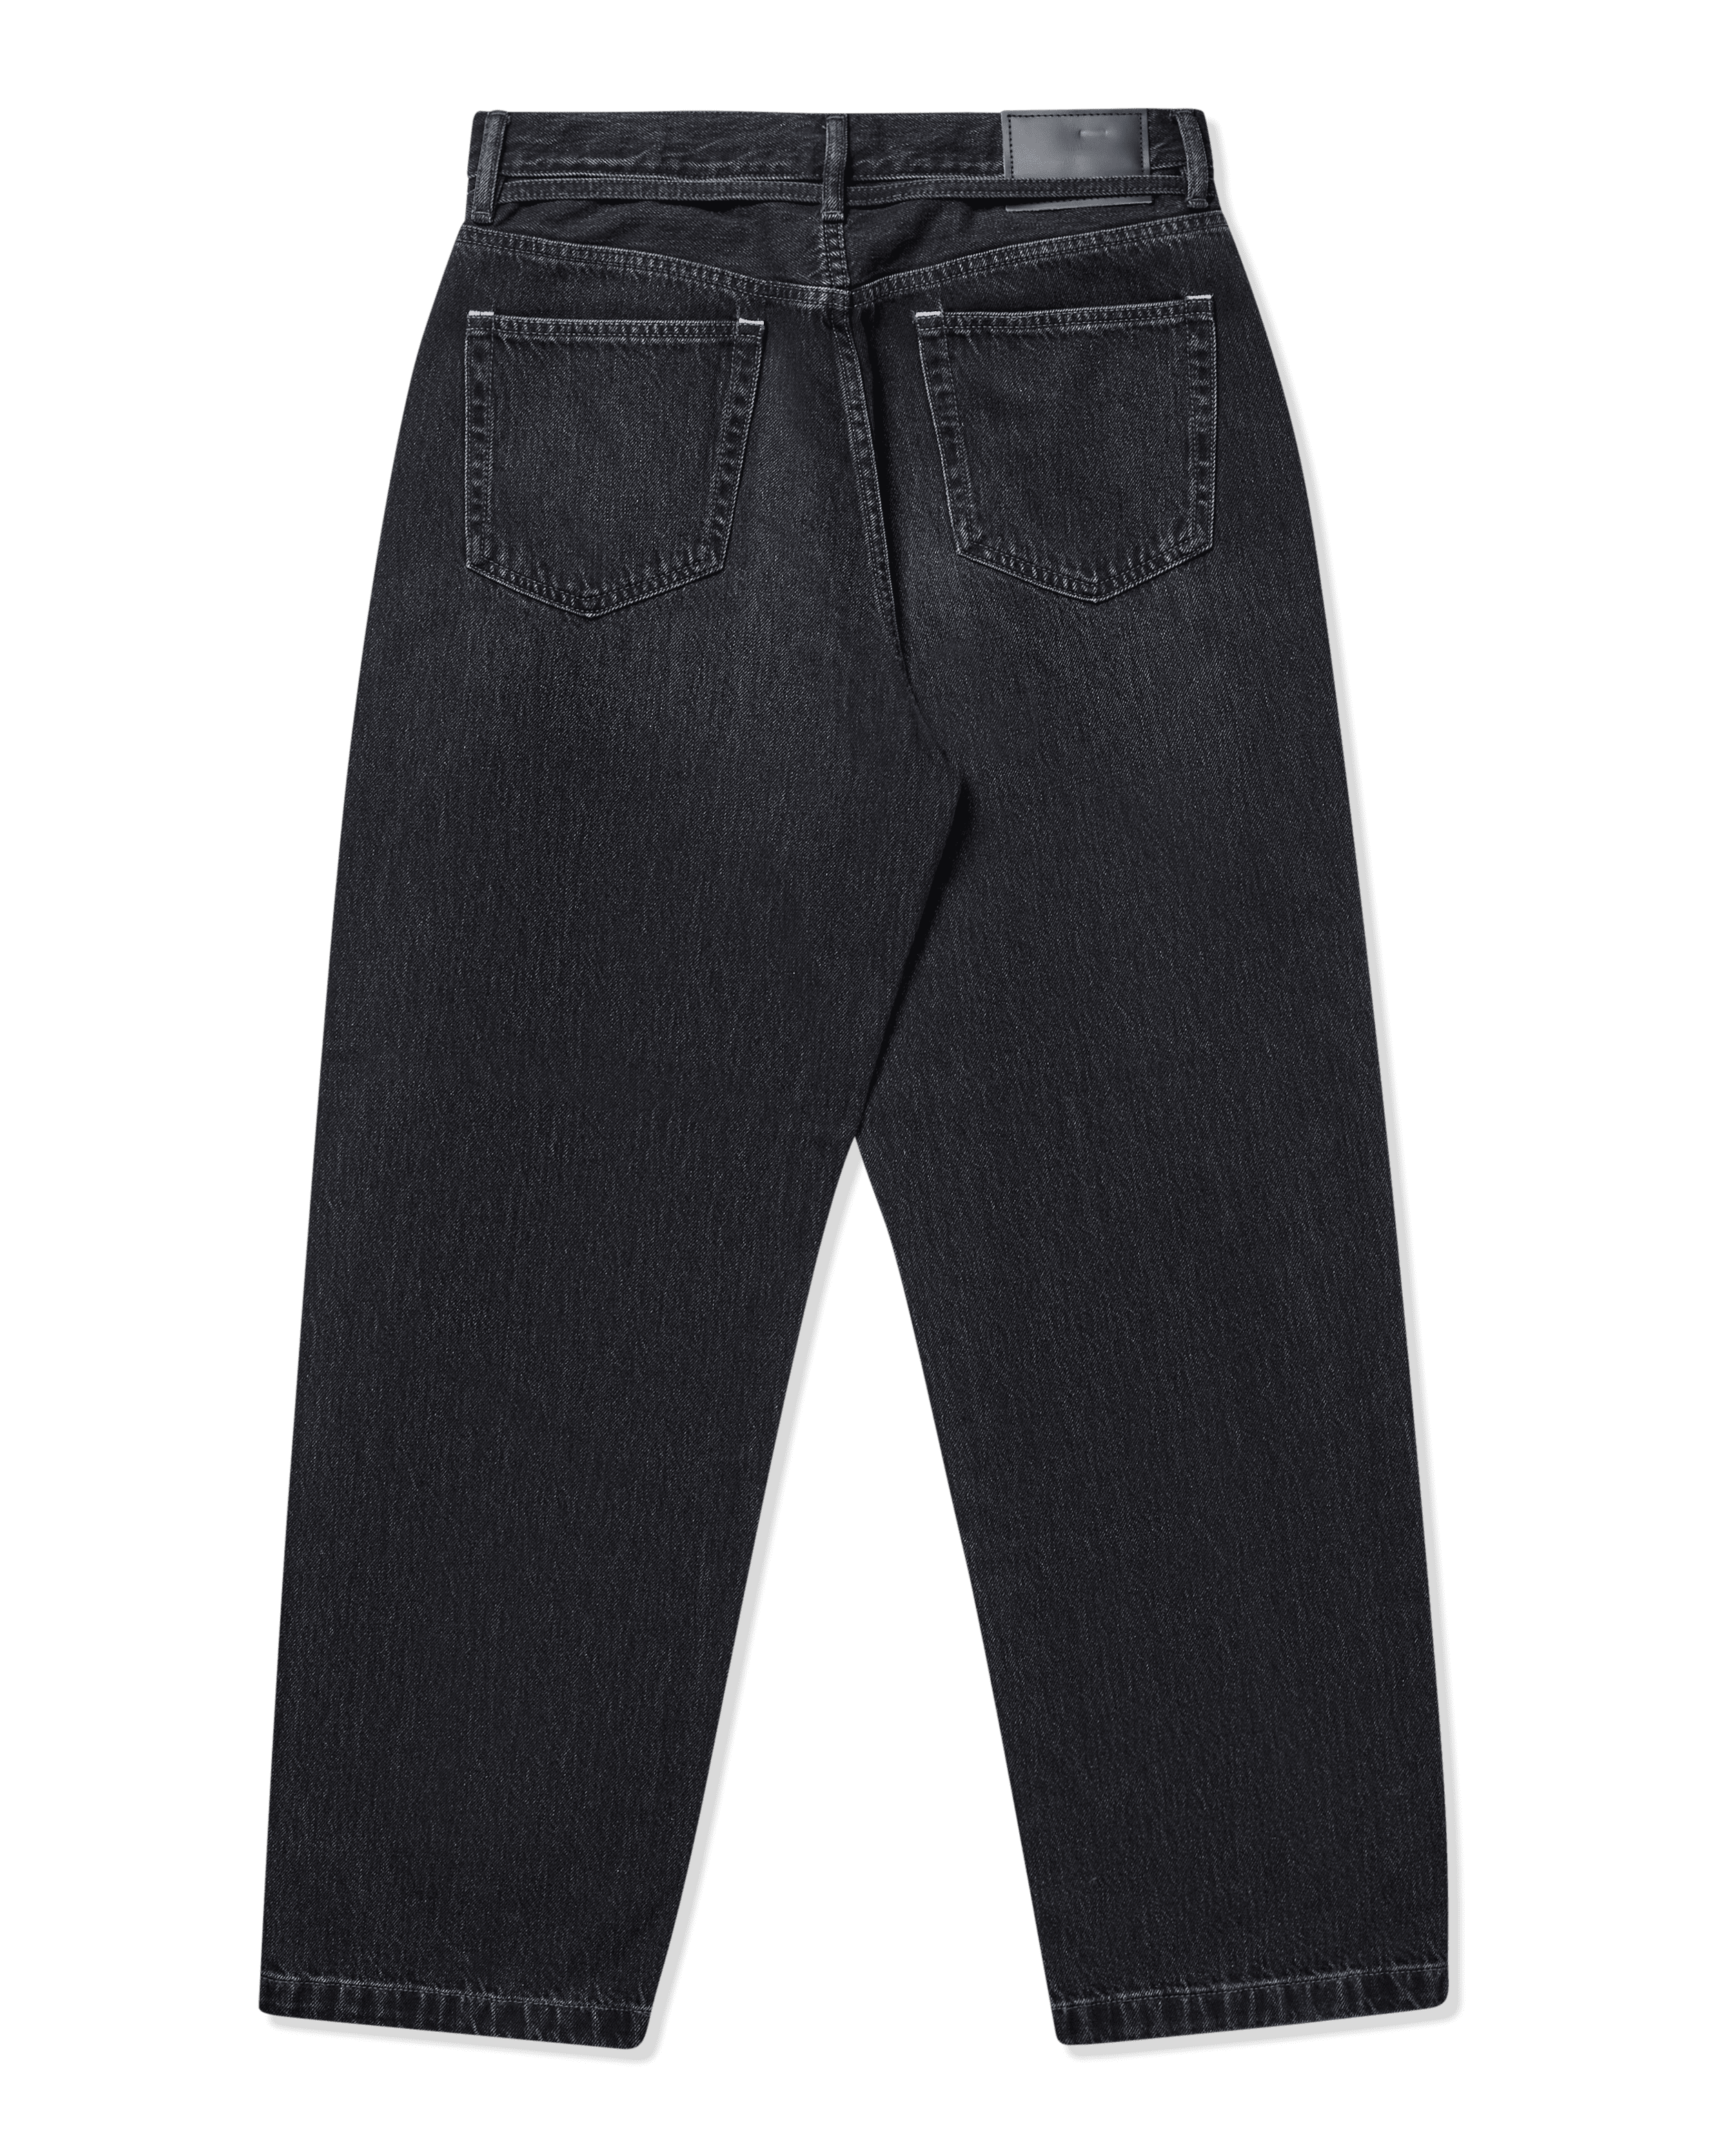 Loose Fit Jeans - 1991 Toj Acne Studios Bottoms Jeans Black